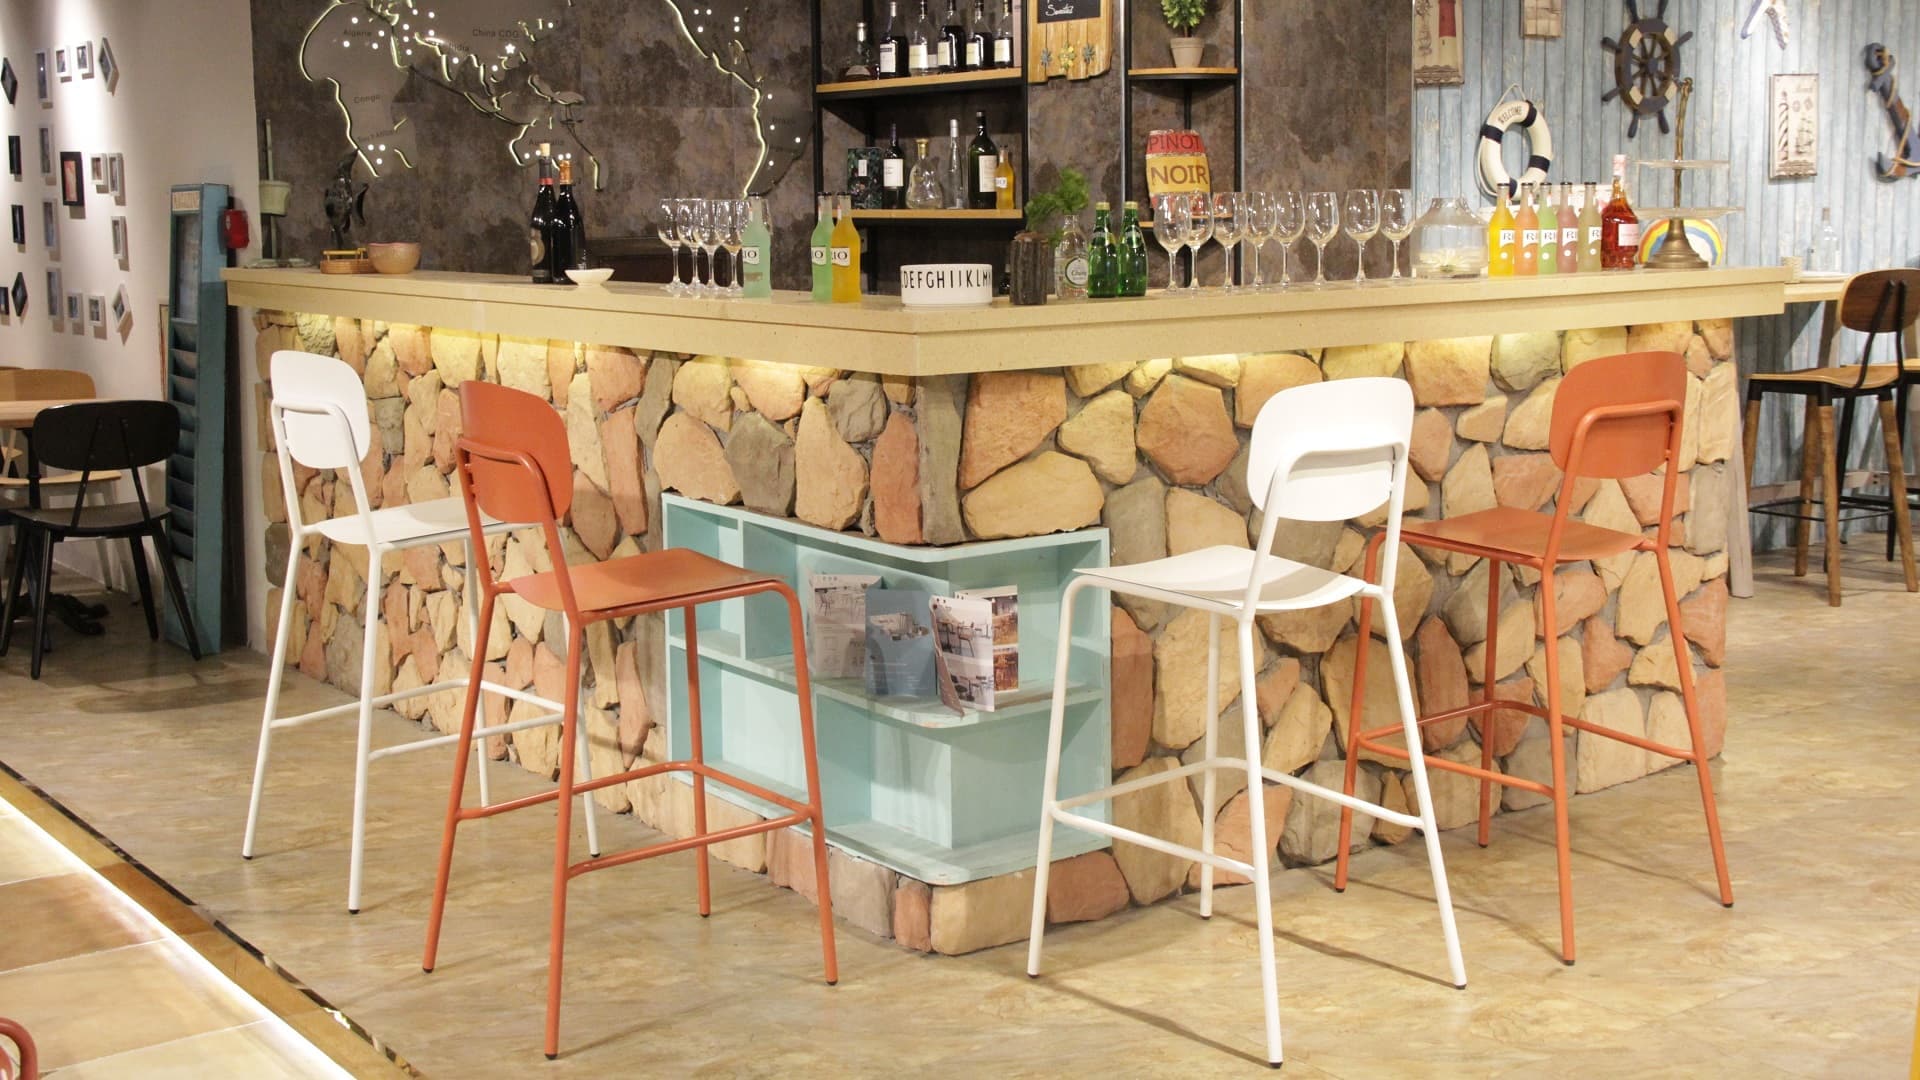 Aluminium Waterproof Indoor Outdoor Garden Bar Tall Chair Bistro Coffee Dining Chair 829S-H75-ALU